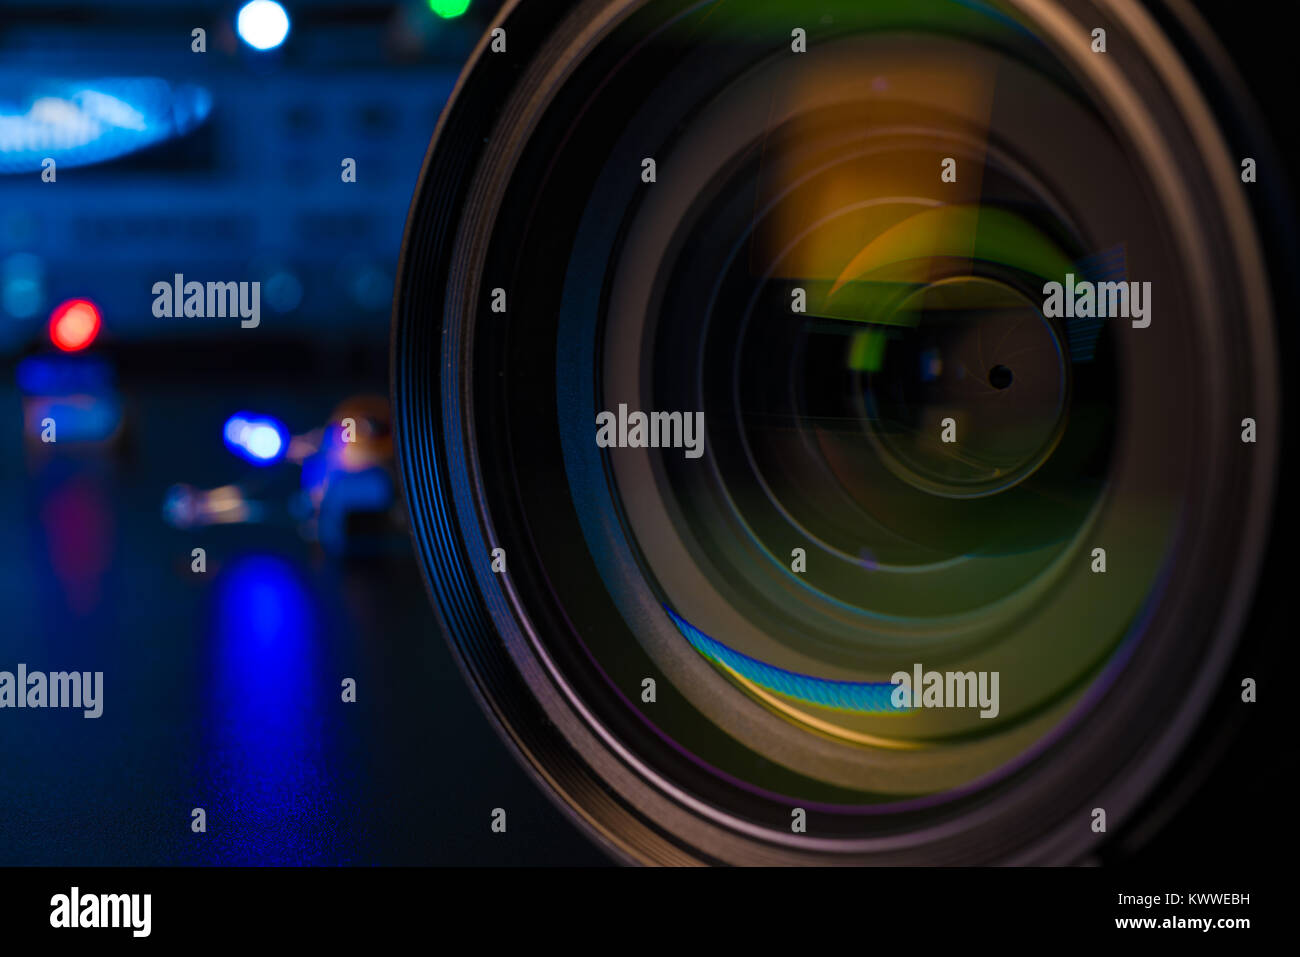 Fotocamera o obiettivo video di close-up su sfondo nero obiettivo reflex digitale Foto Stock